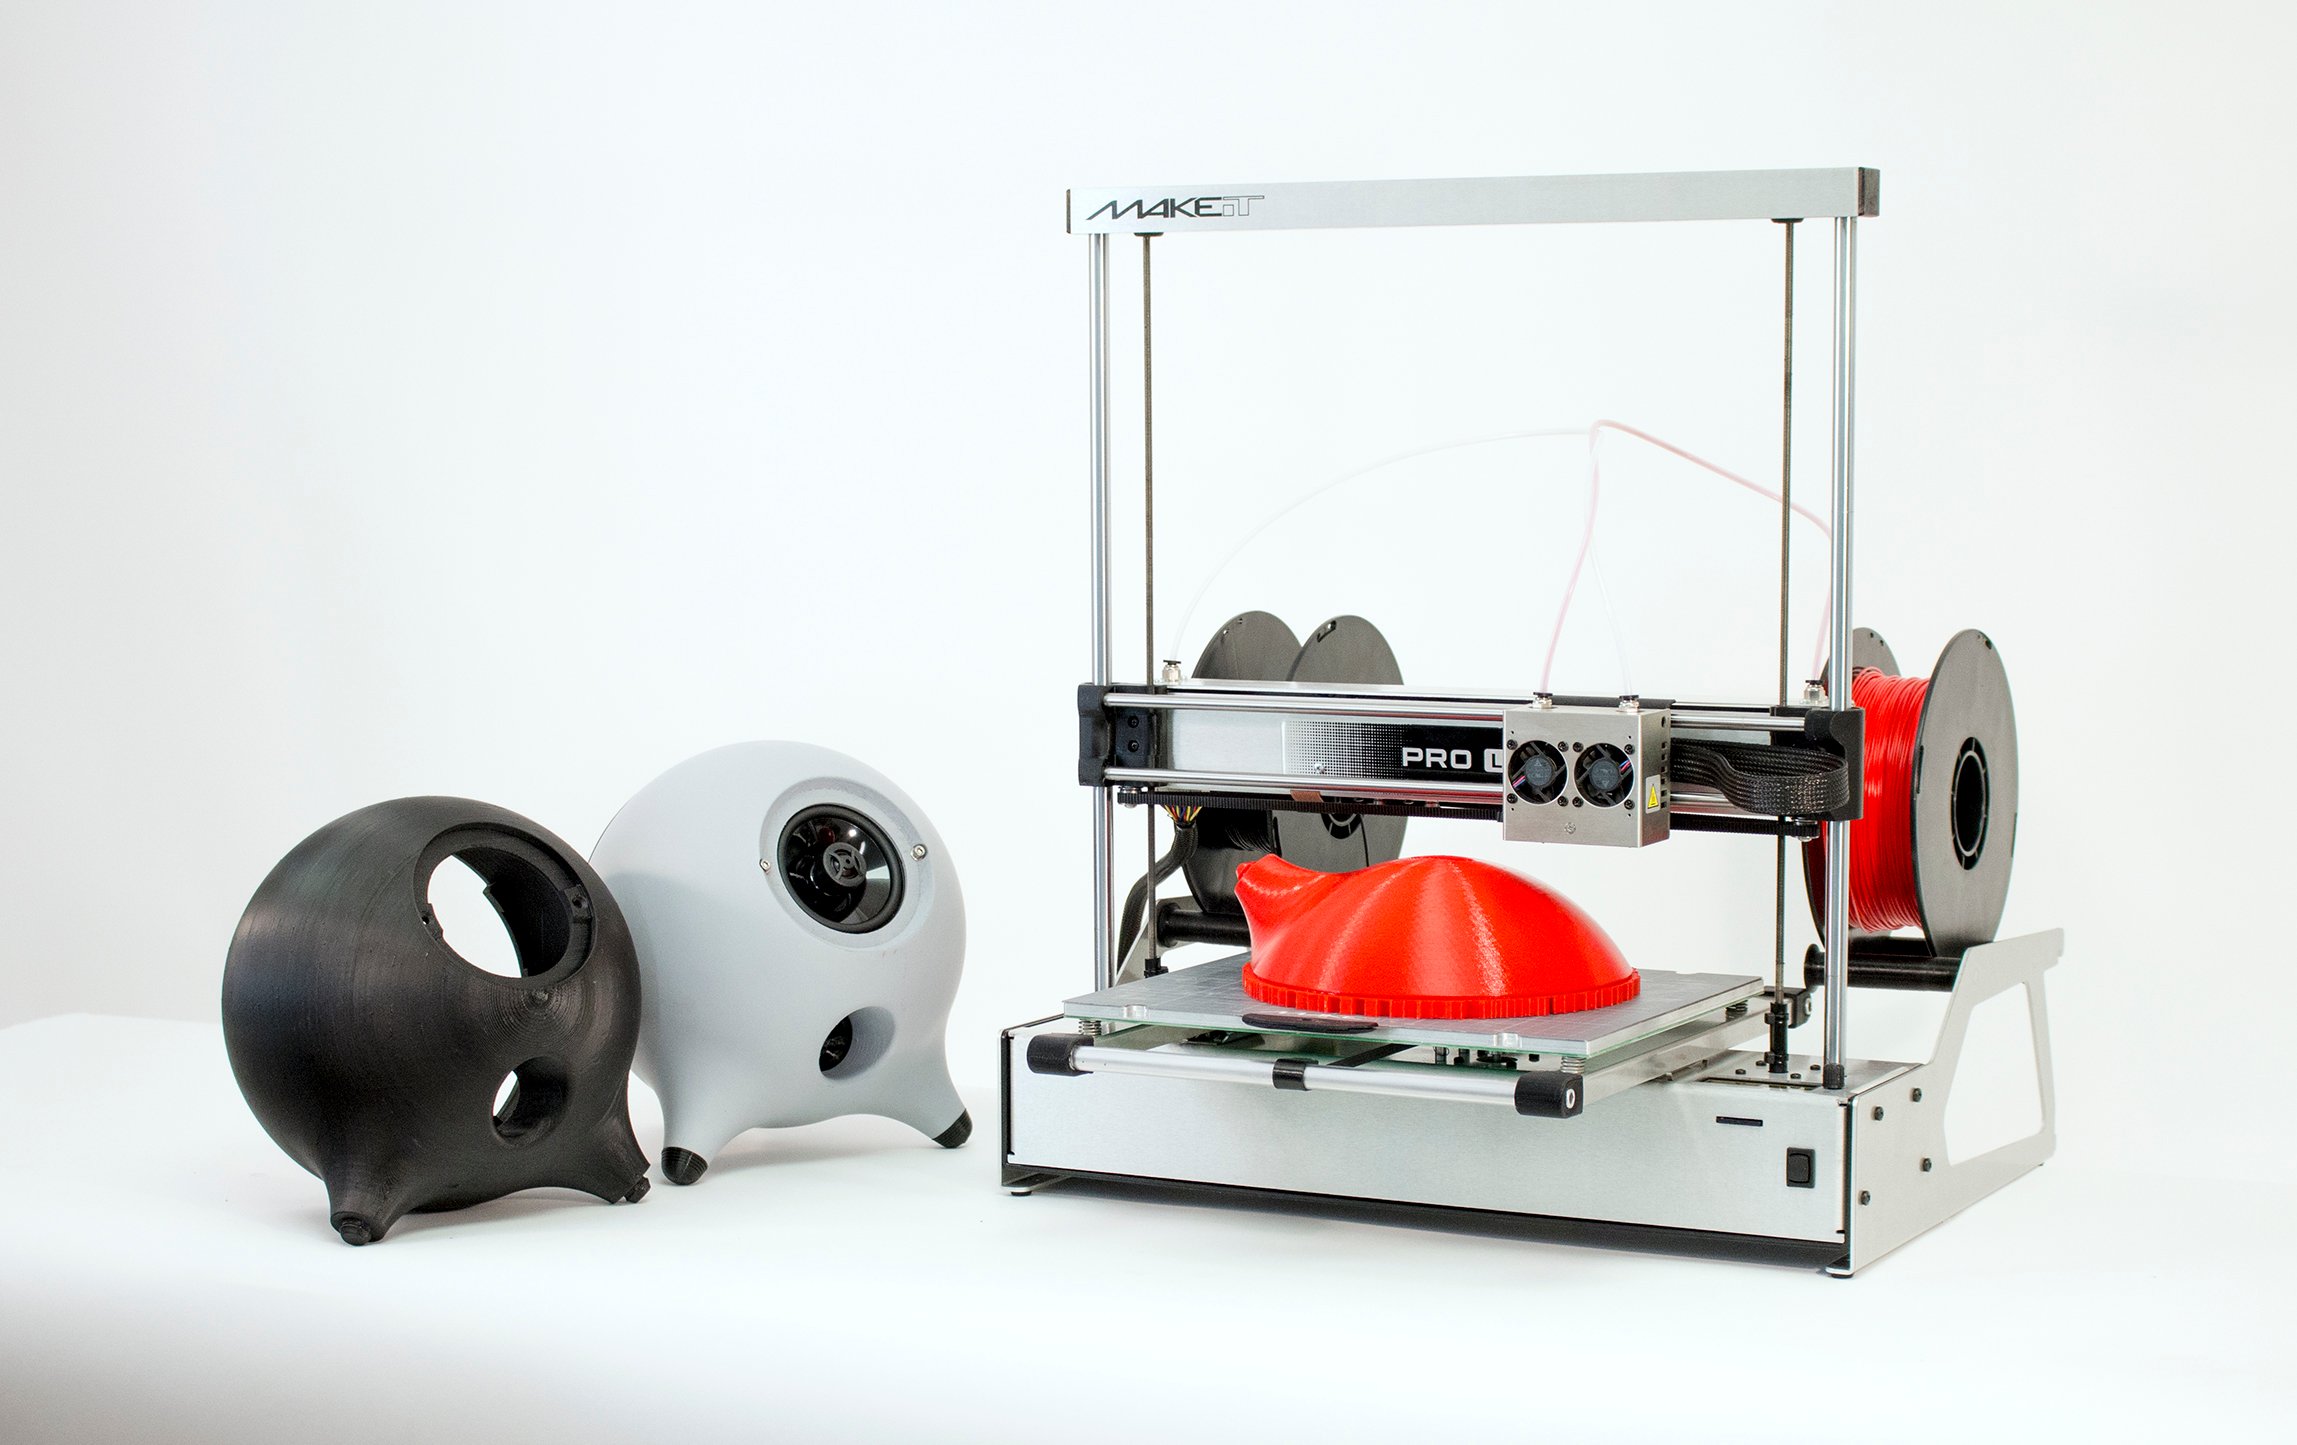  The MAKEiT Pro-L desktop 3D printer 